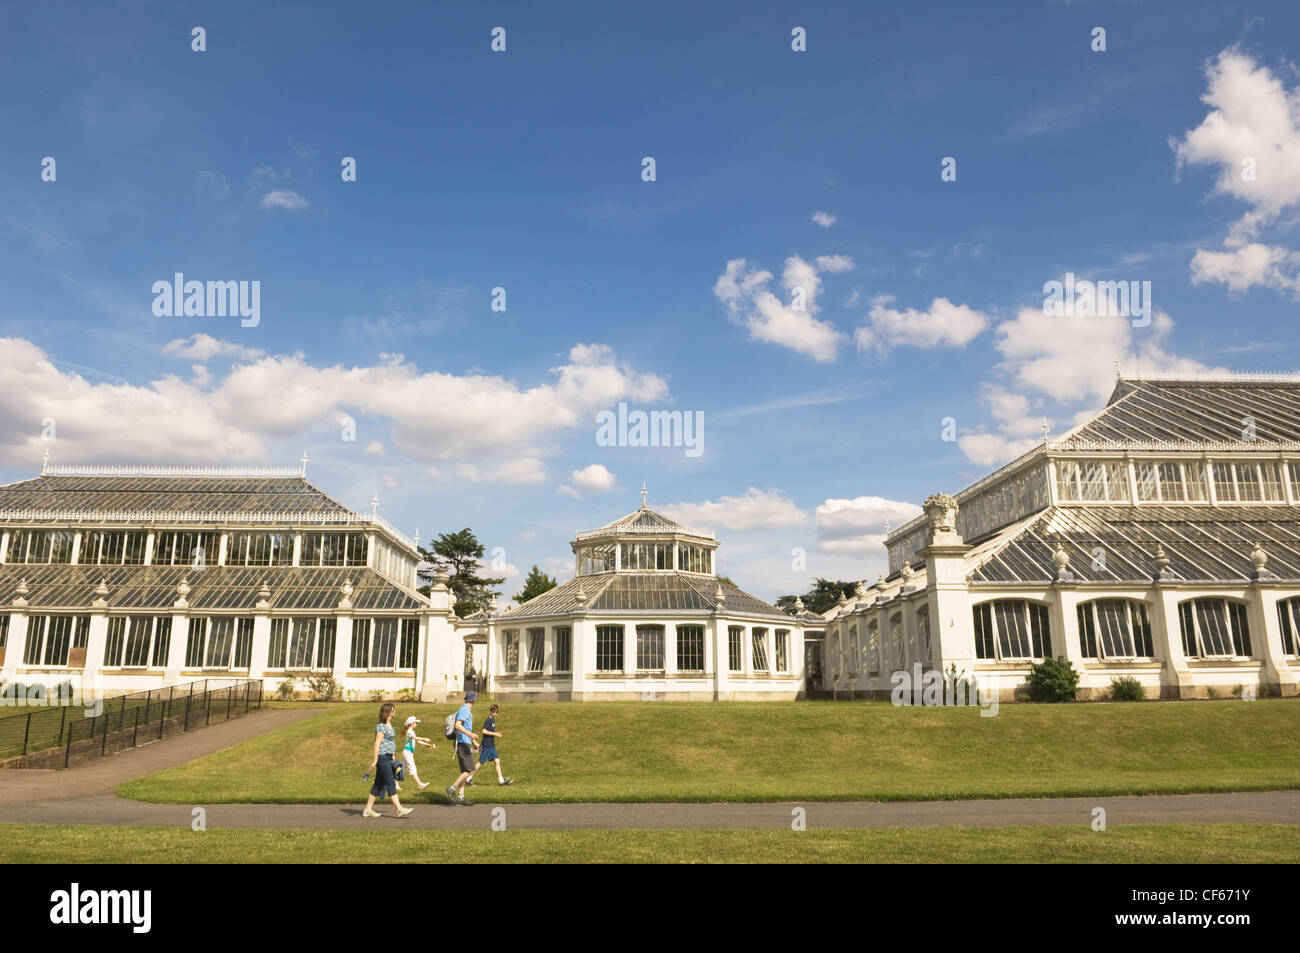 Une famille devant la maison tempérée, la plus grande serre victorienne dans le monde, à Kew Gardens. Banque D'Images